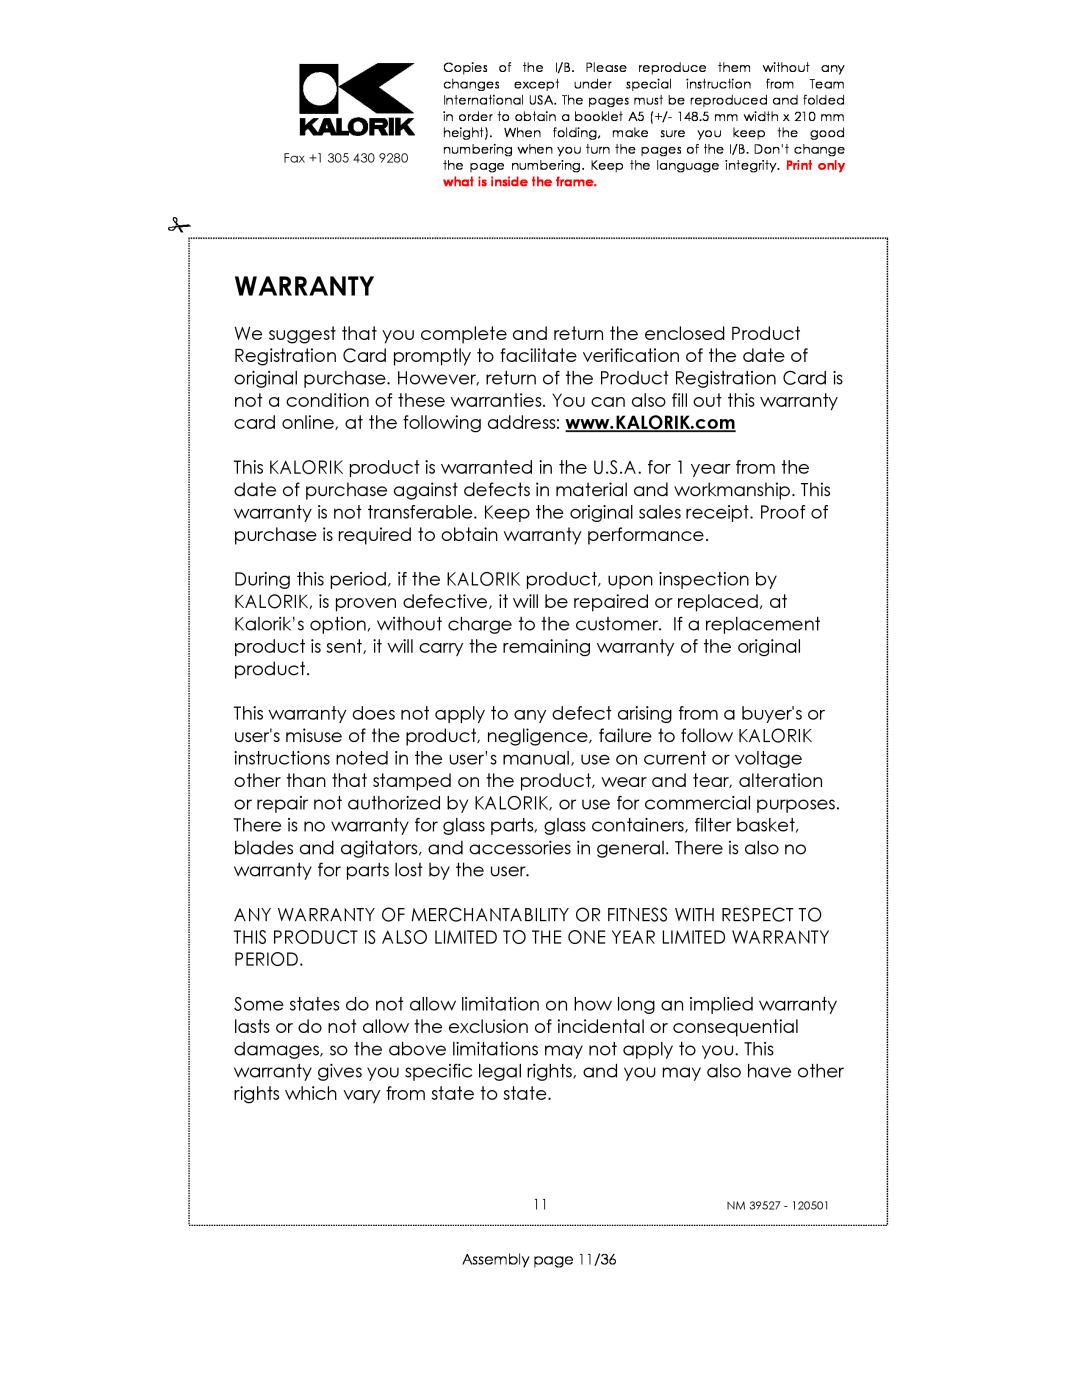 Kalorik NM 39527 manual Warranty, Assembly page 11/36 